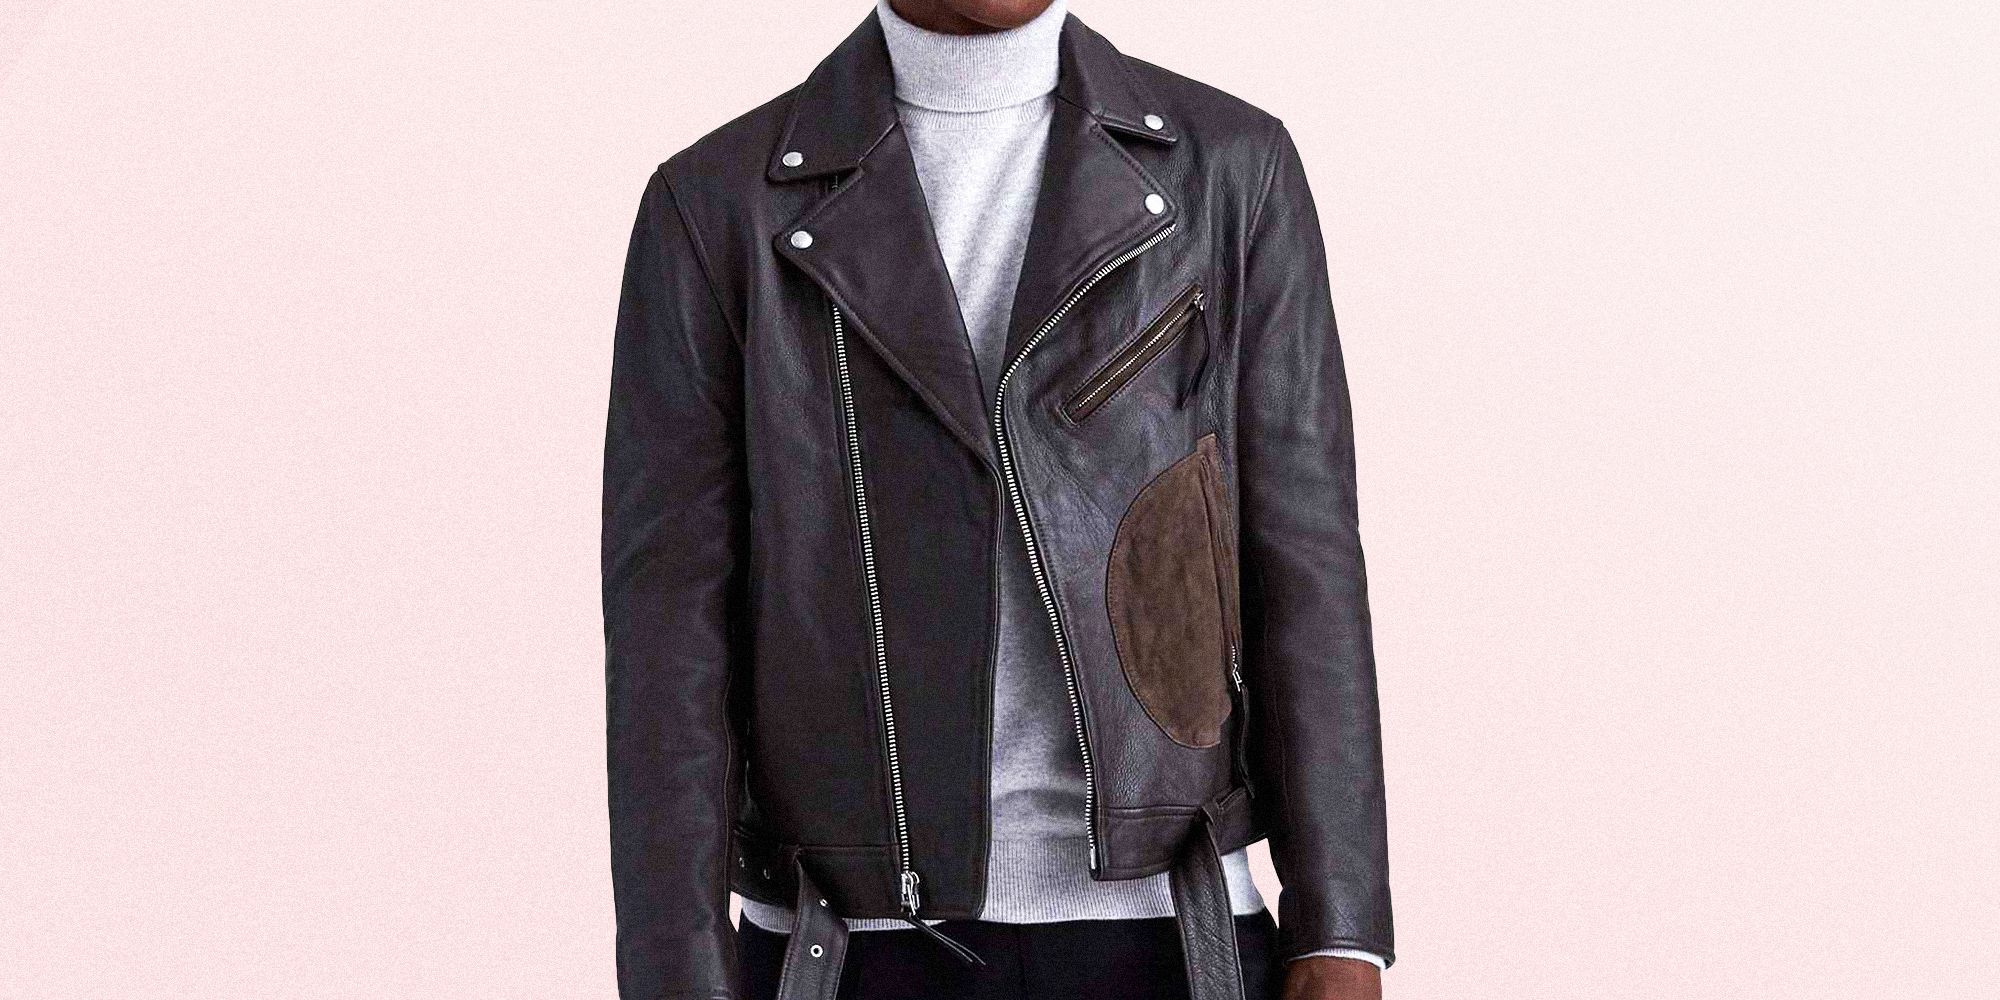 lauren leather jacket price